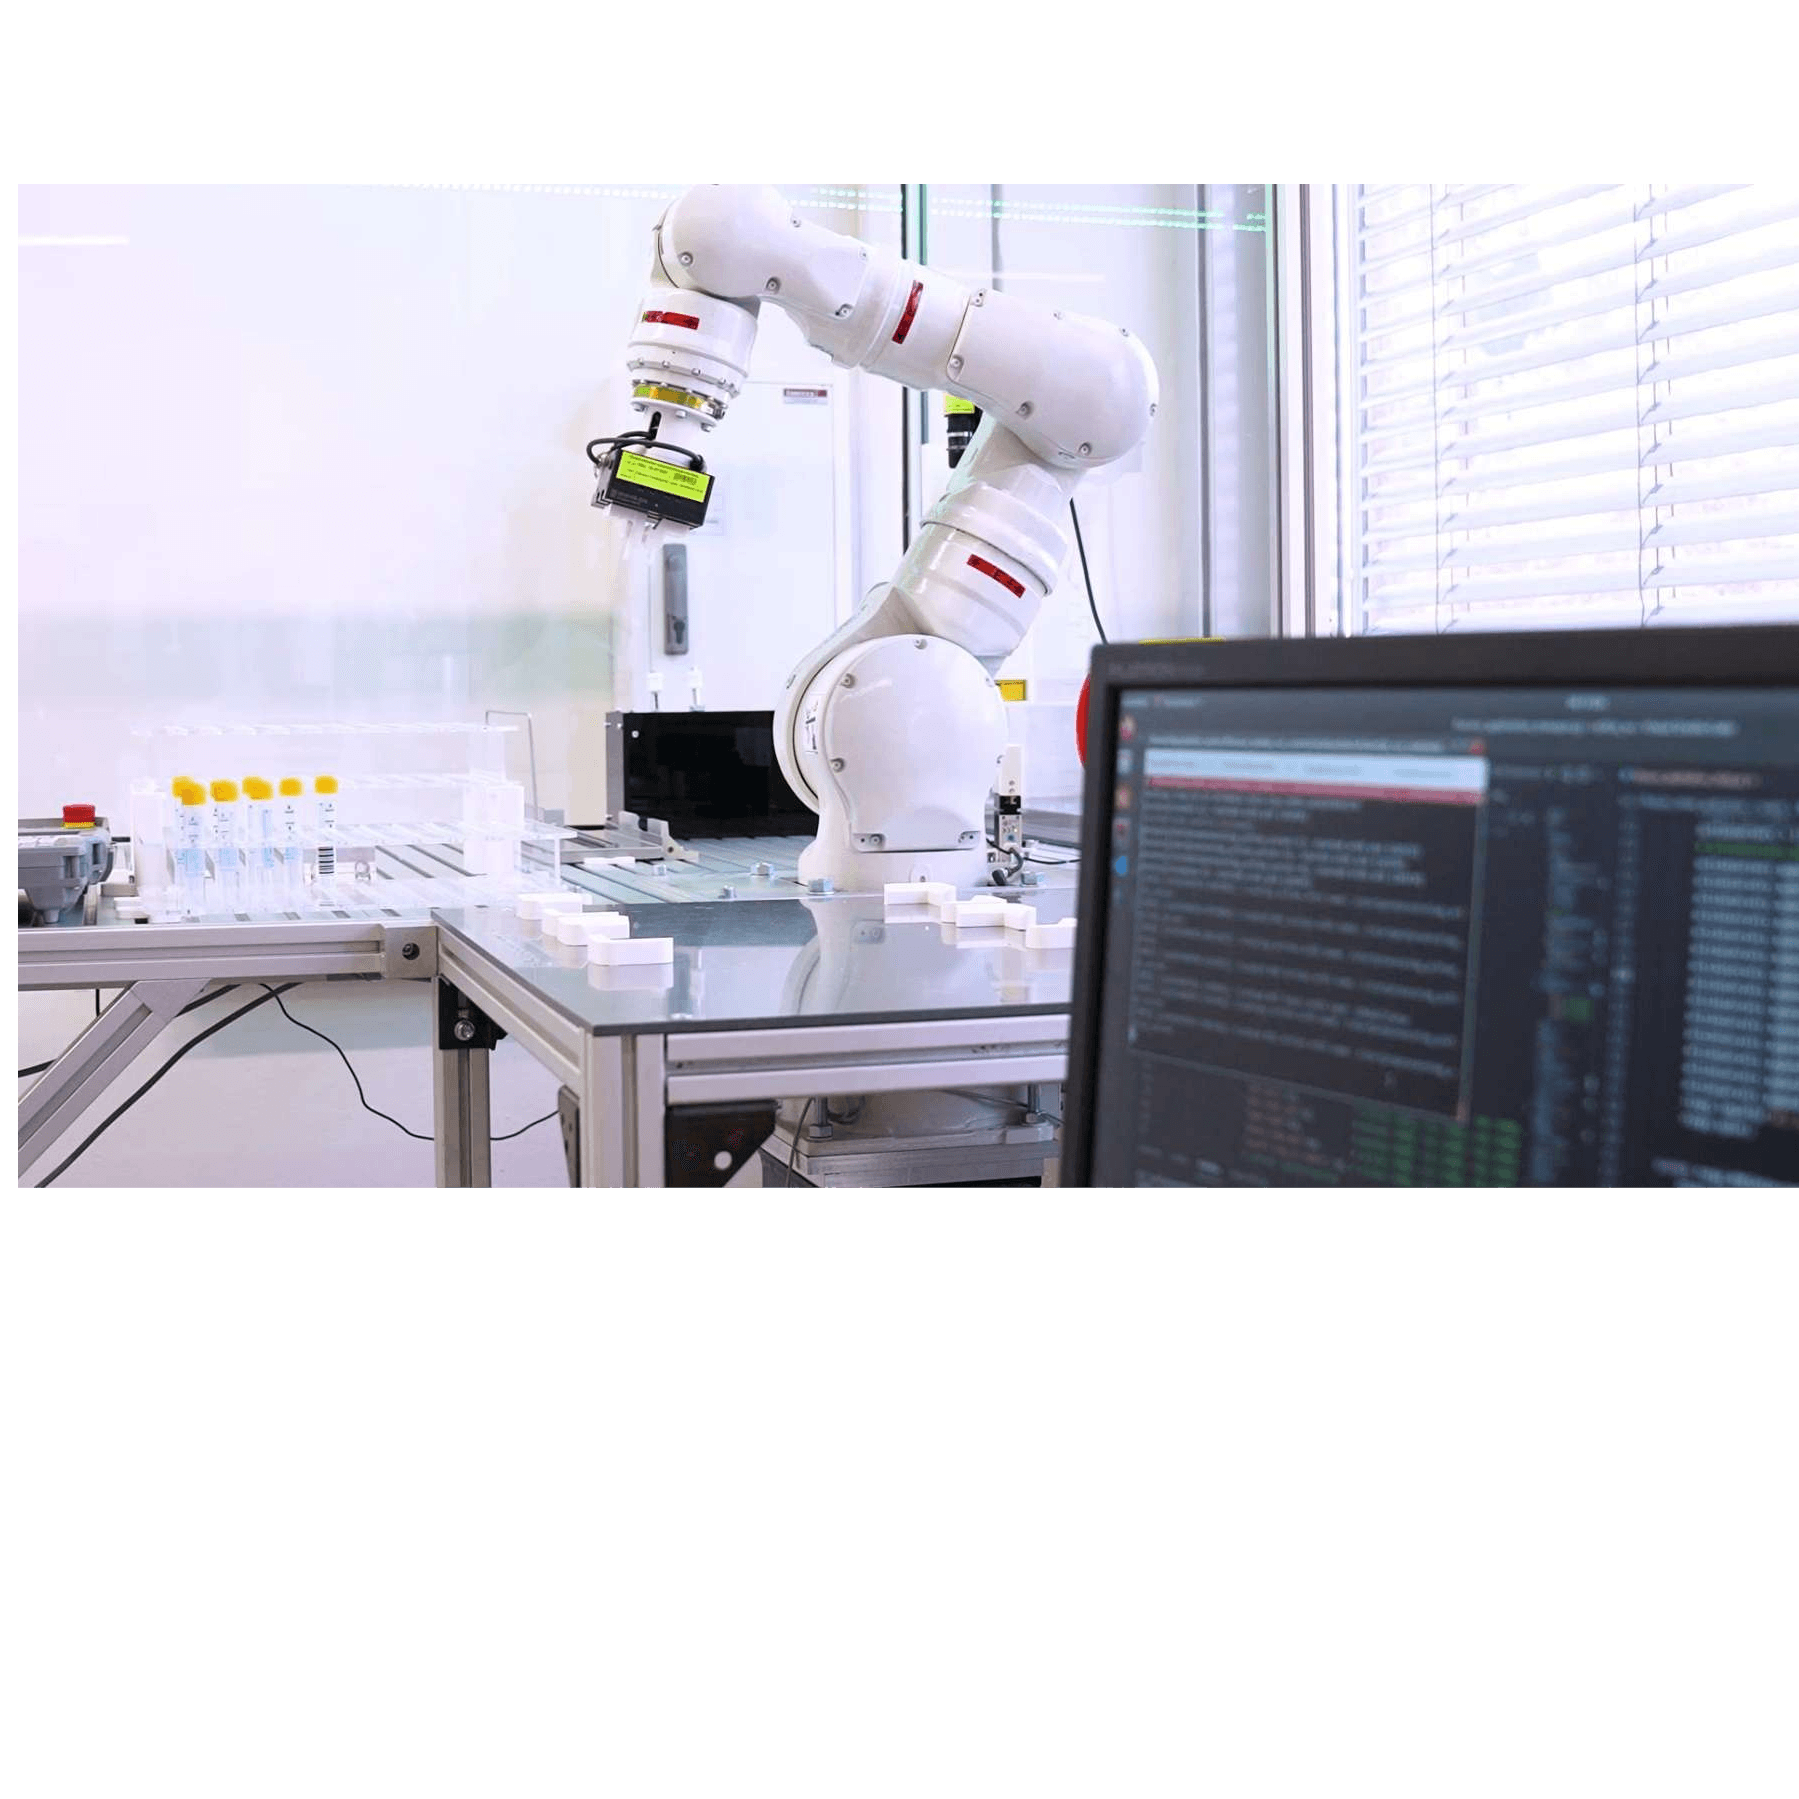 Brauchen wir C3PO im Labor, um Routinearbeiten zu automatisieren?